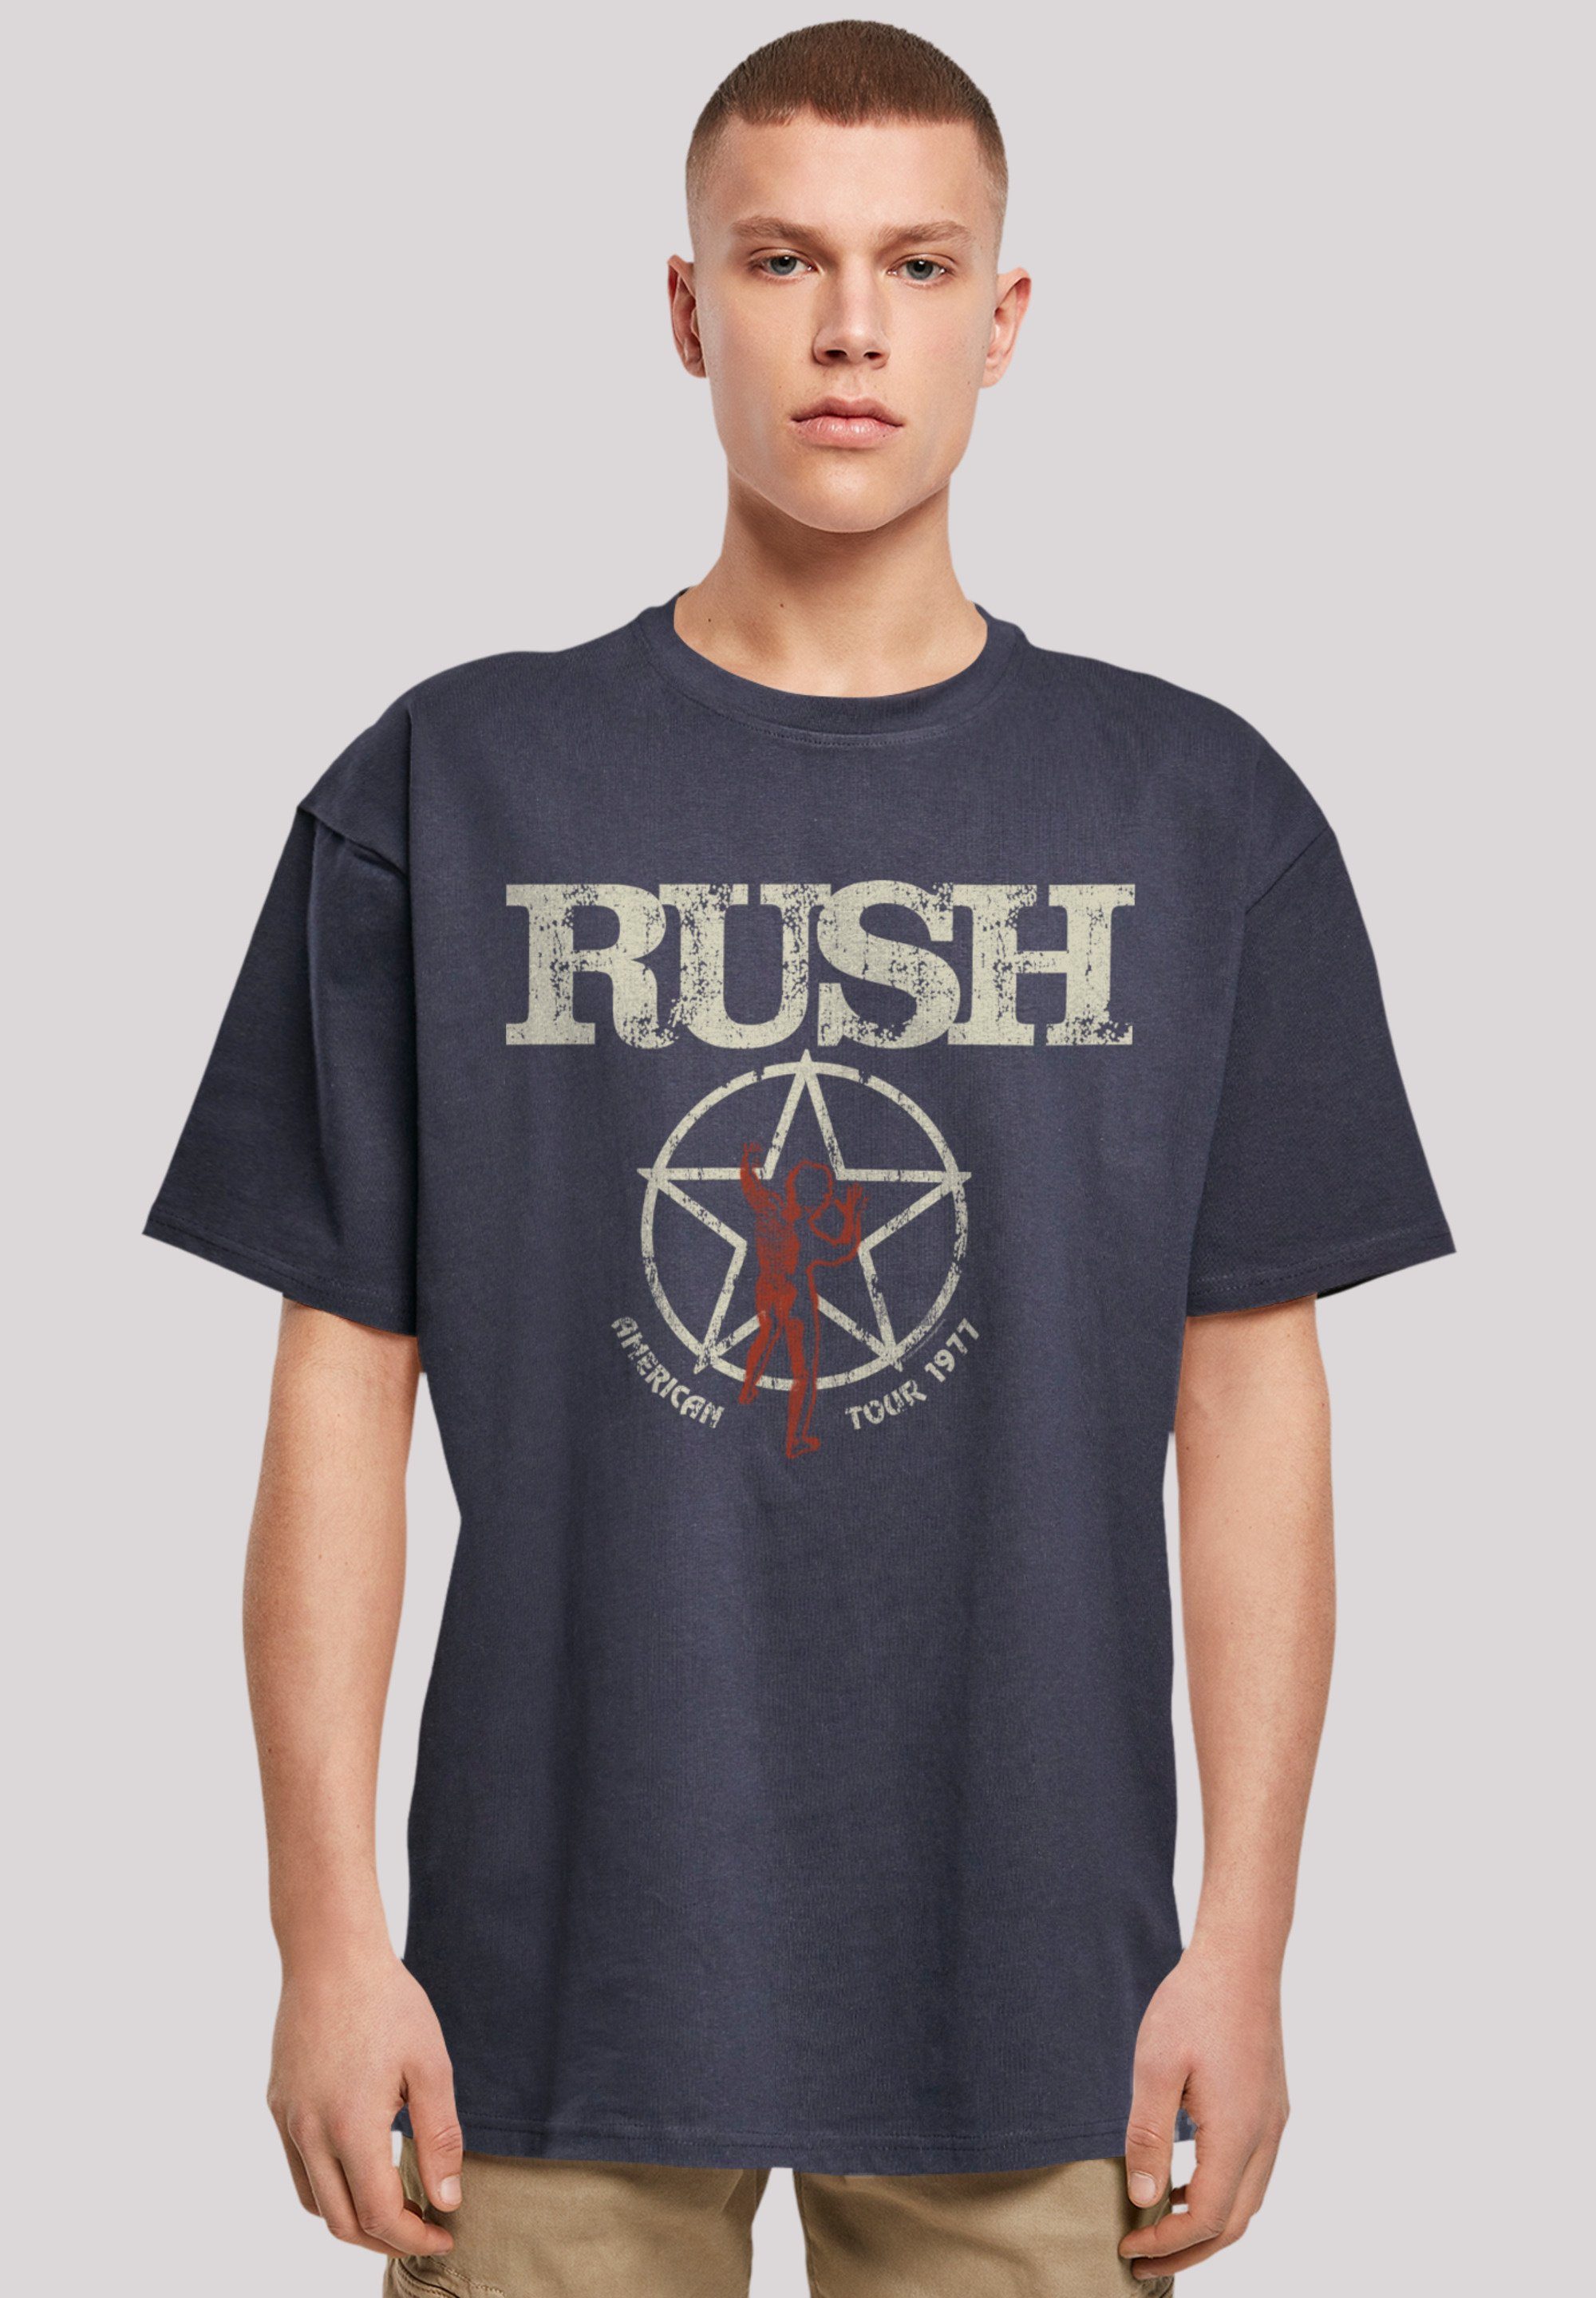 Rush Tour F4NT4STIC Premium Qualität Band American Rock navy 1977 T-Shirt